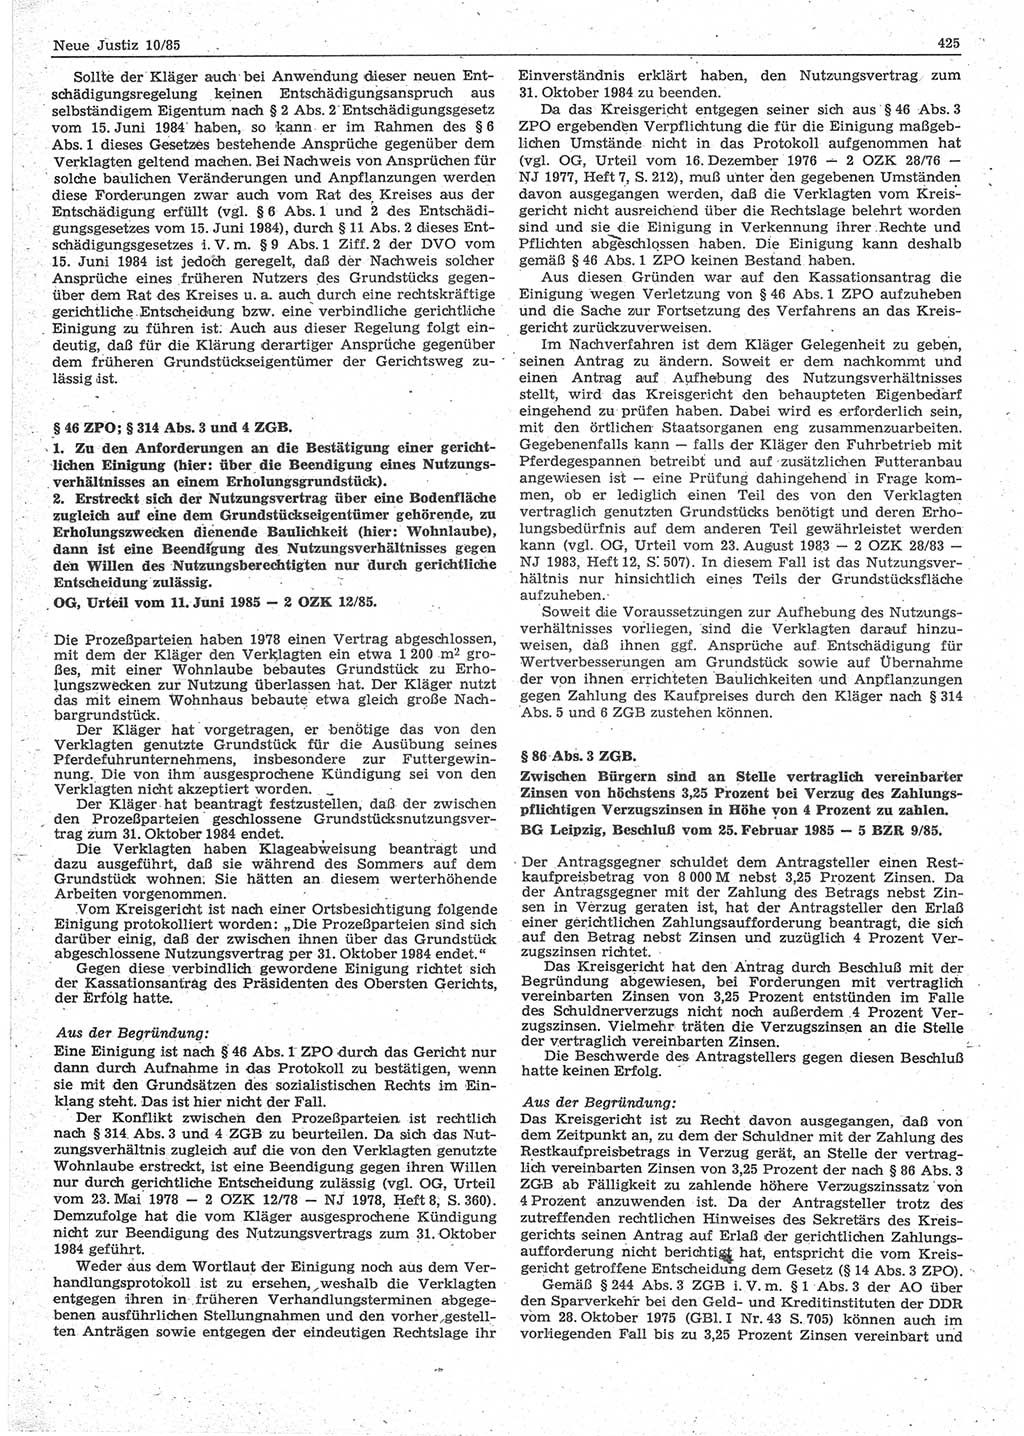 Neue Justiz (NJ), Zeitschrift für sozialistisches Recht und Gesetzlichkeit [Deutsche Demokratische Republik (DDR)], 39. Jahrgang 1985, Seite 425 (NJ DDR 1985, S. 425)